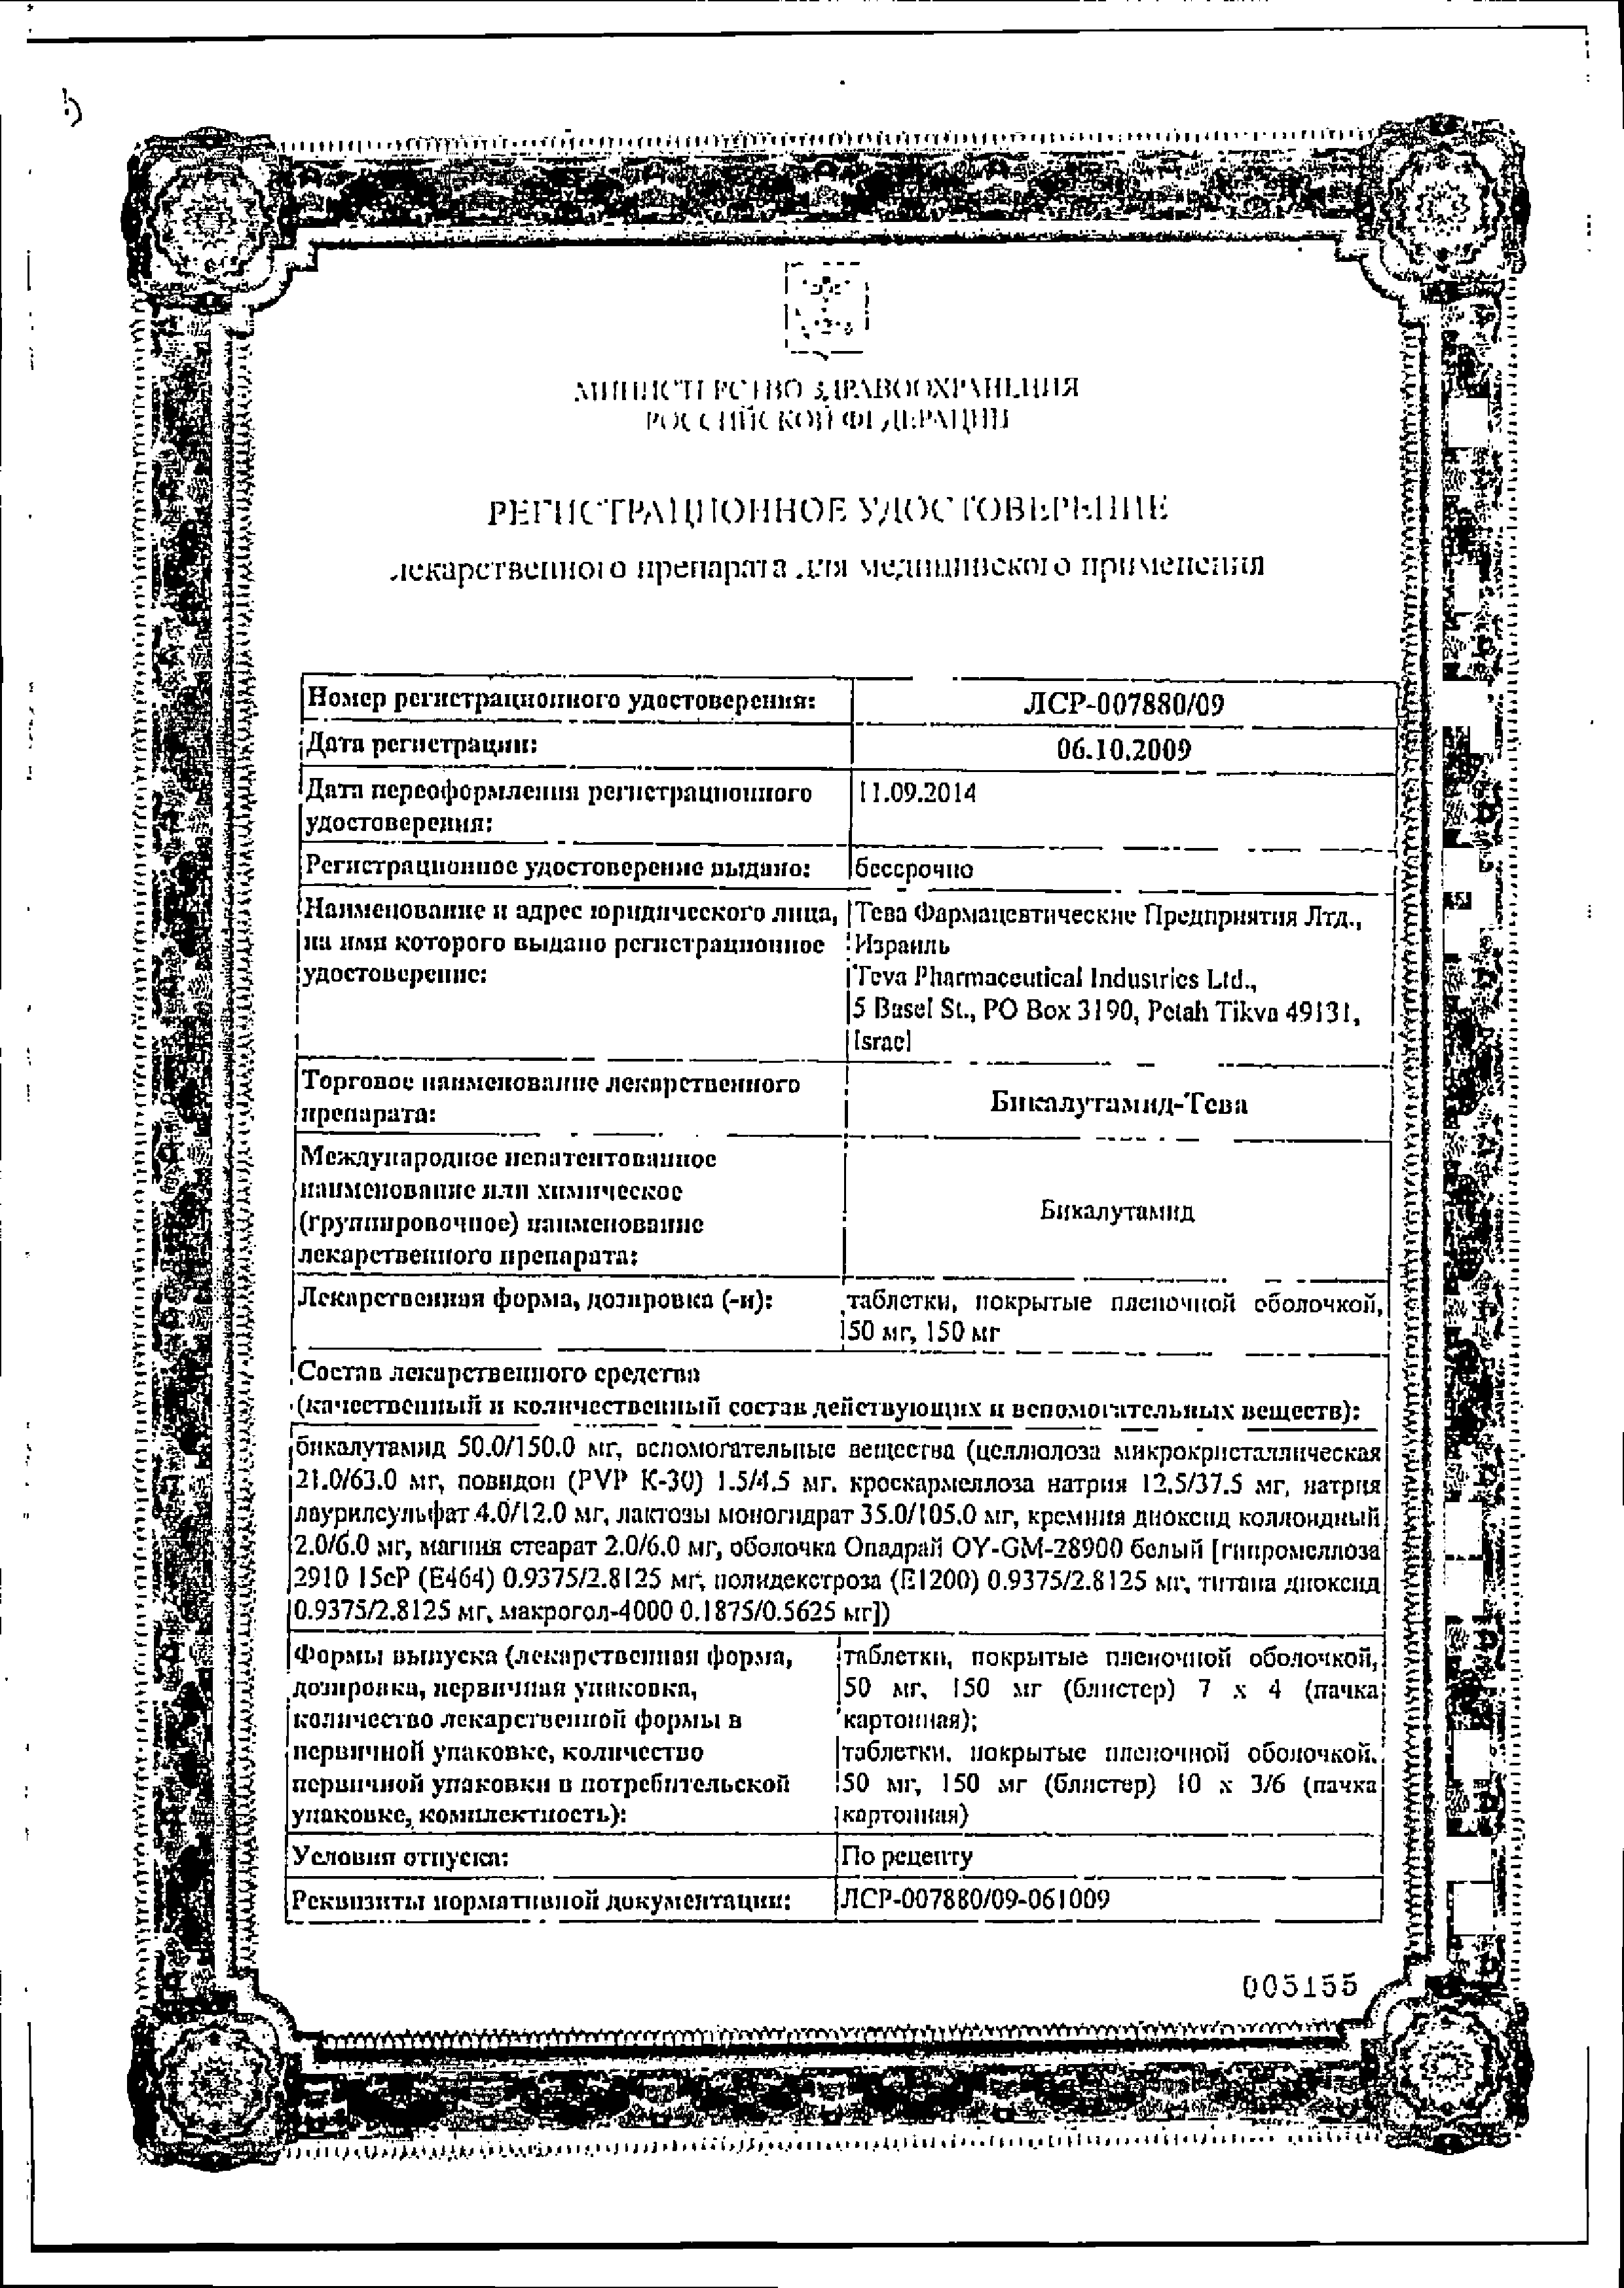 Бикалутамид-Тева сертификат